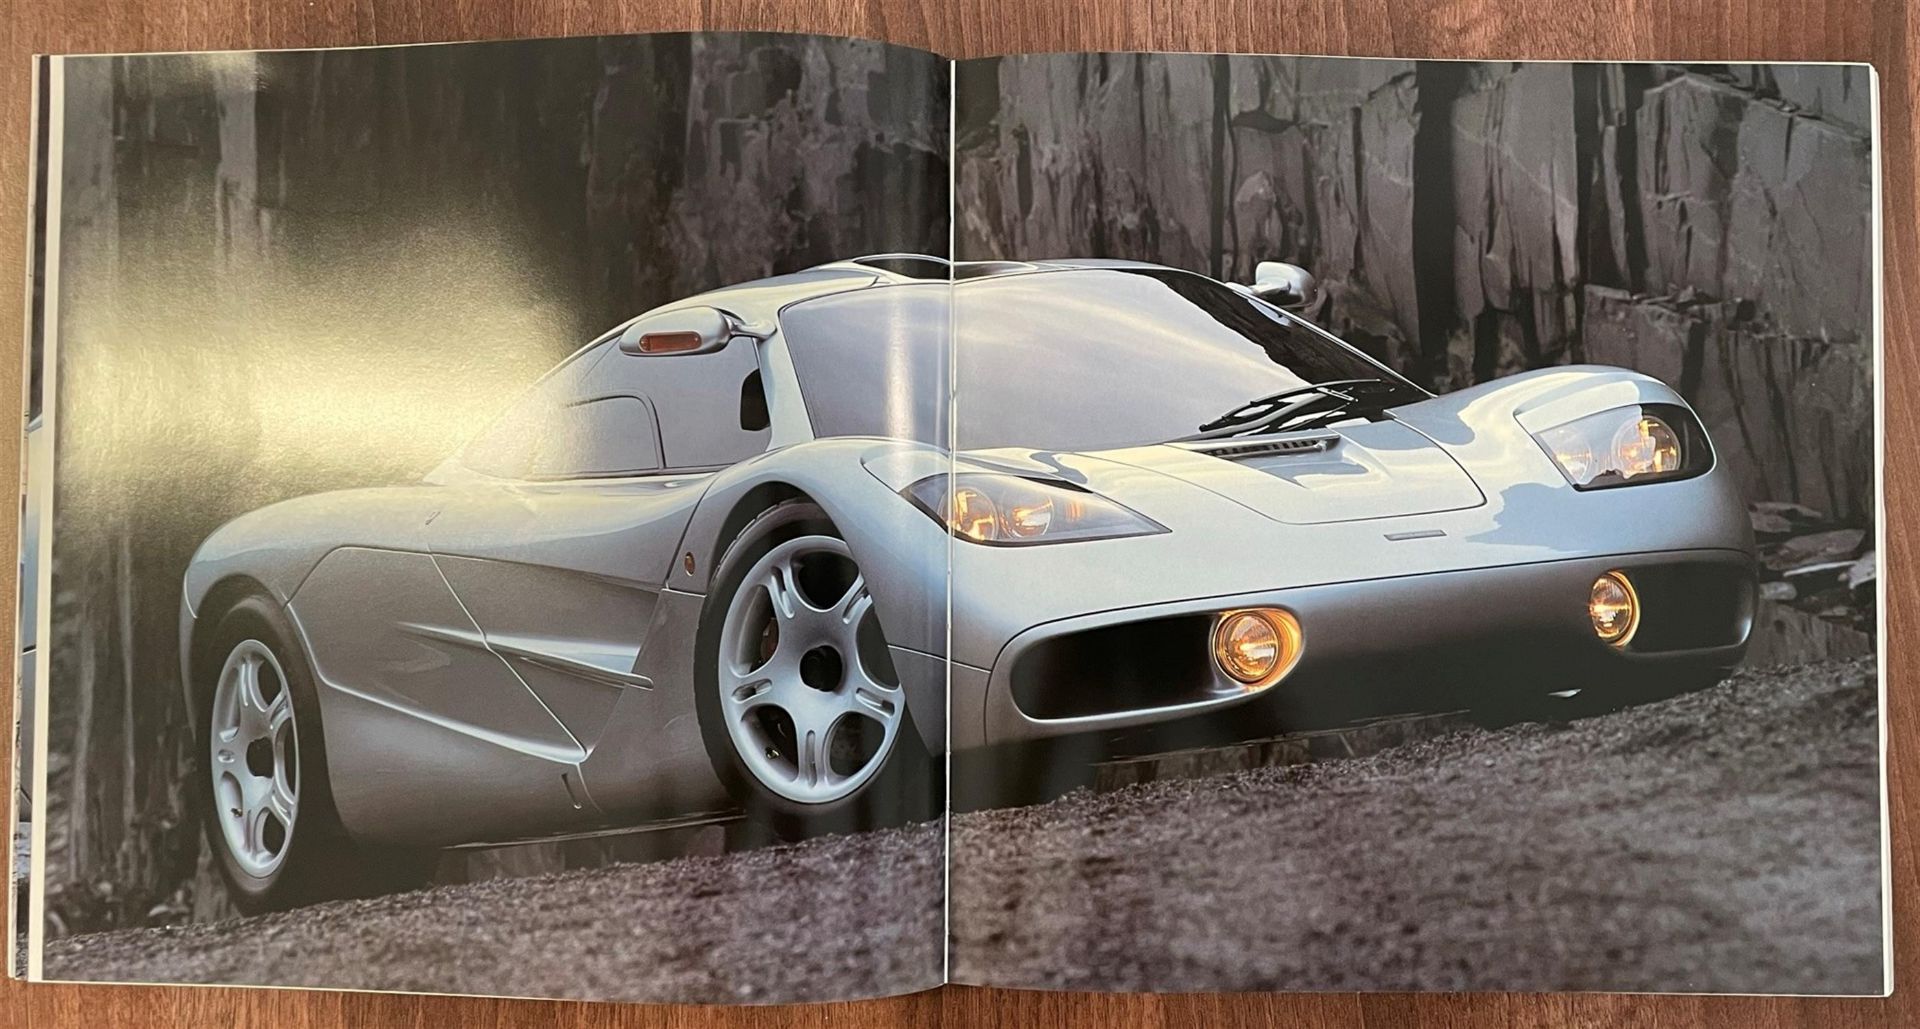 McLaren F1 Paperback Brochure - Image 7 of 7